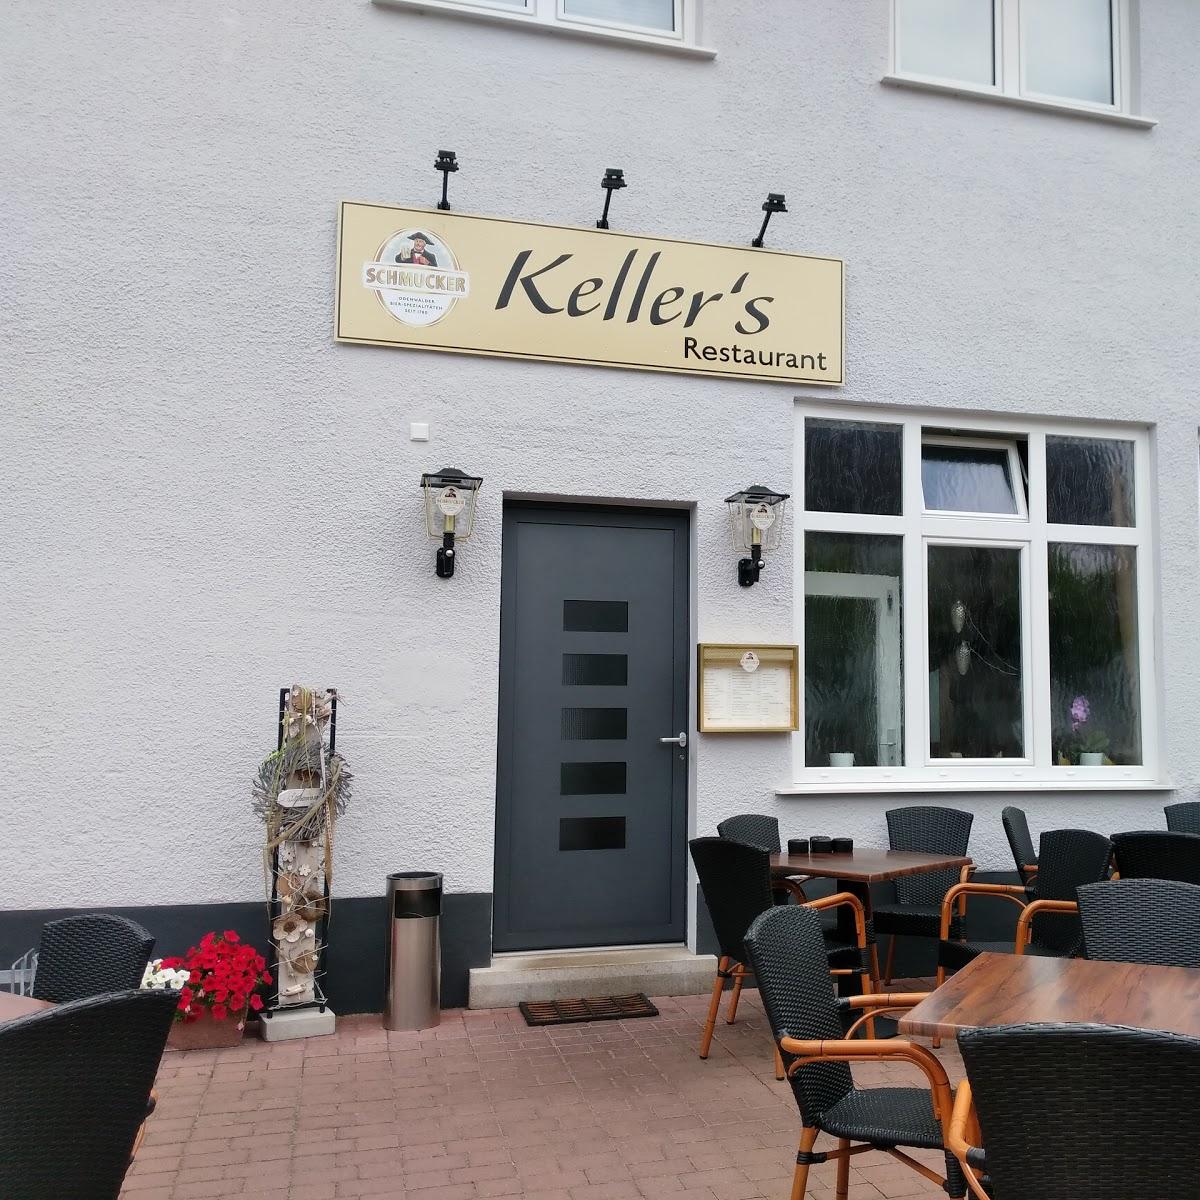 Restaurant "Keller